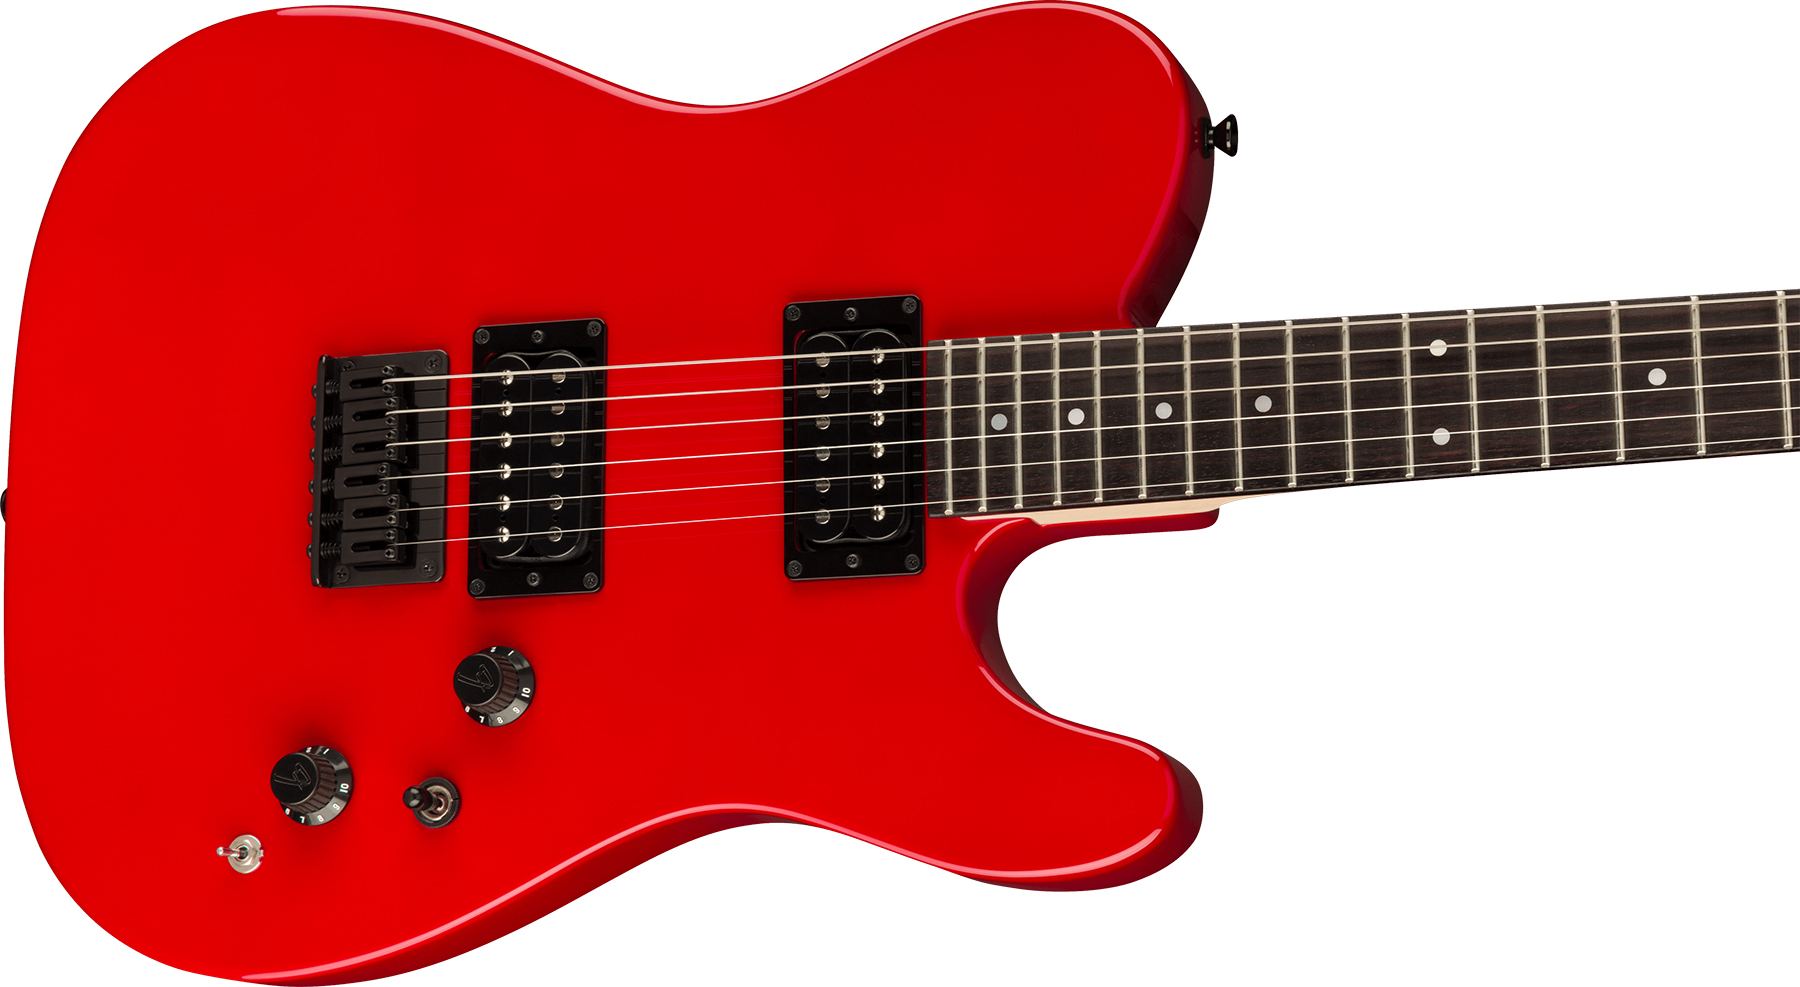 Fender Tele Boxer Hh Jap Ht Rw +housse - Torino Red - Guitarra eléctrica con forma de tel - Variation 2